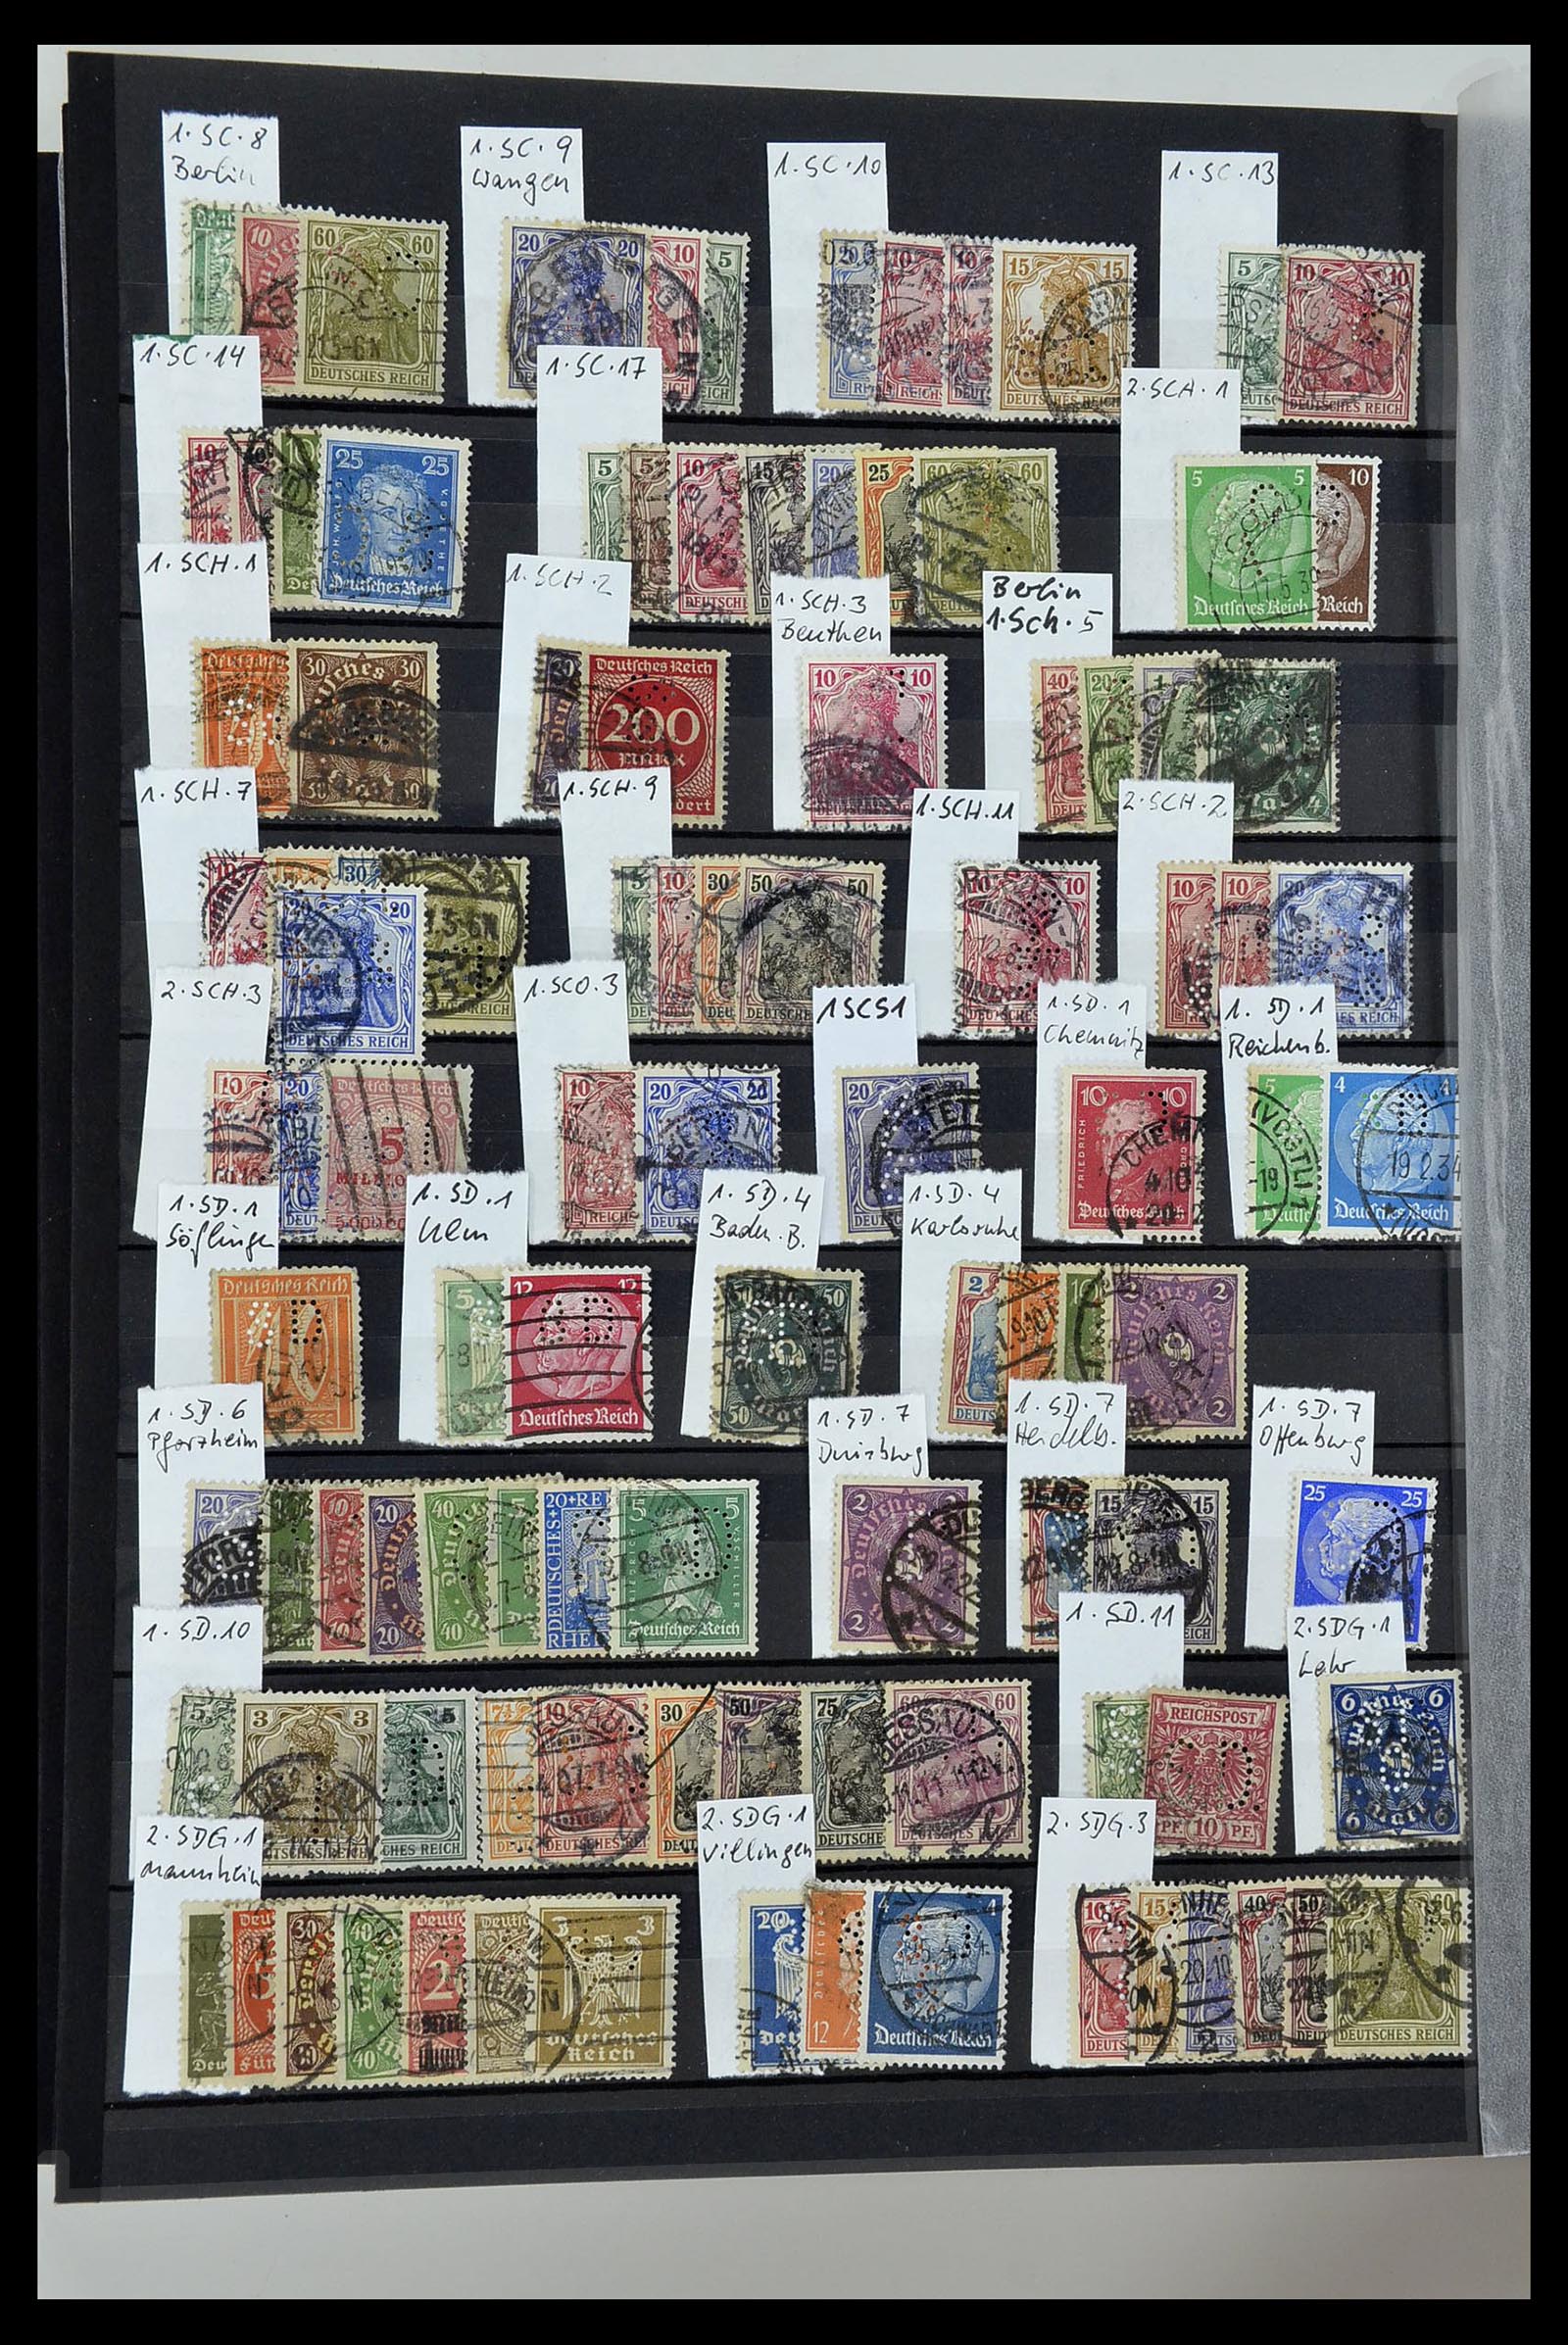 34432 034 - Stamp Collection 34432 German Reich perfins 1900-1933.